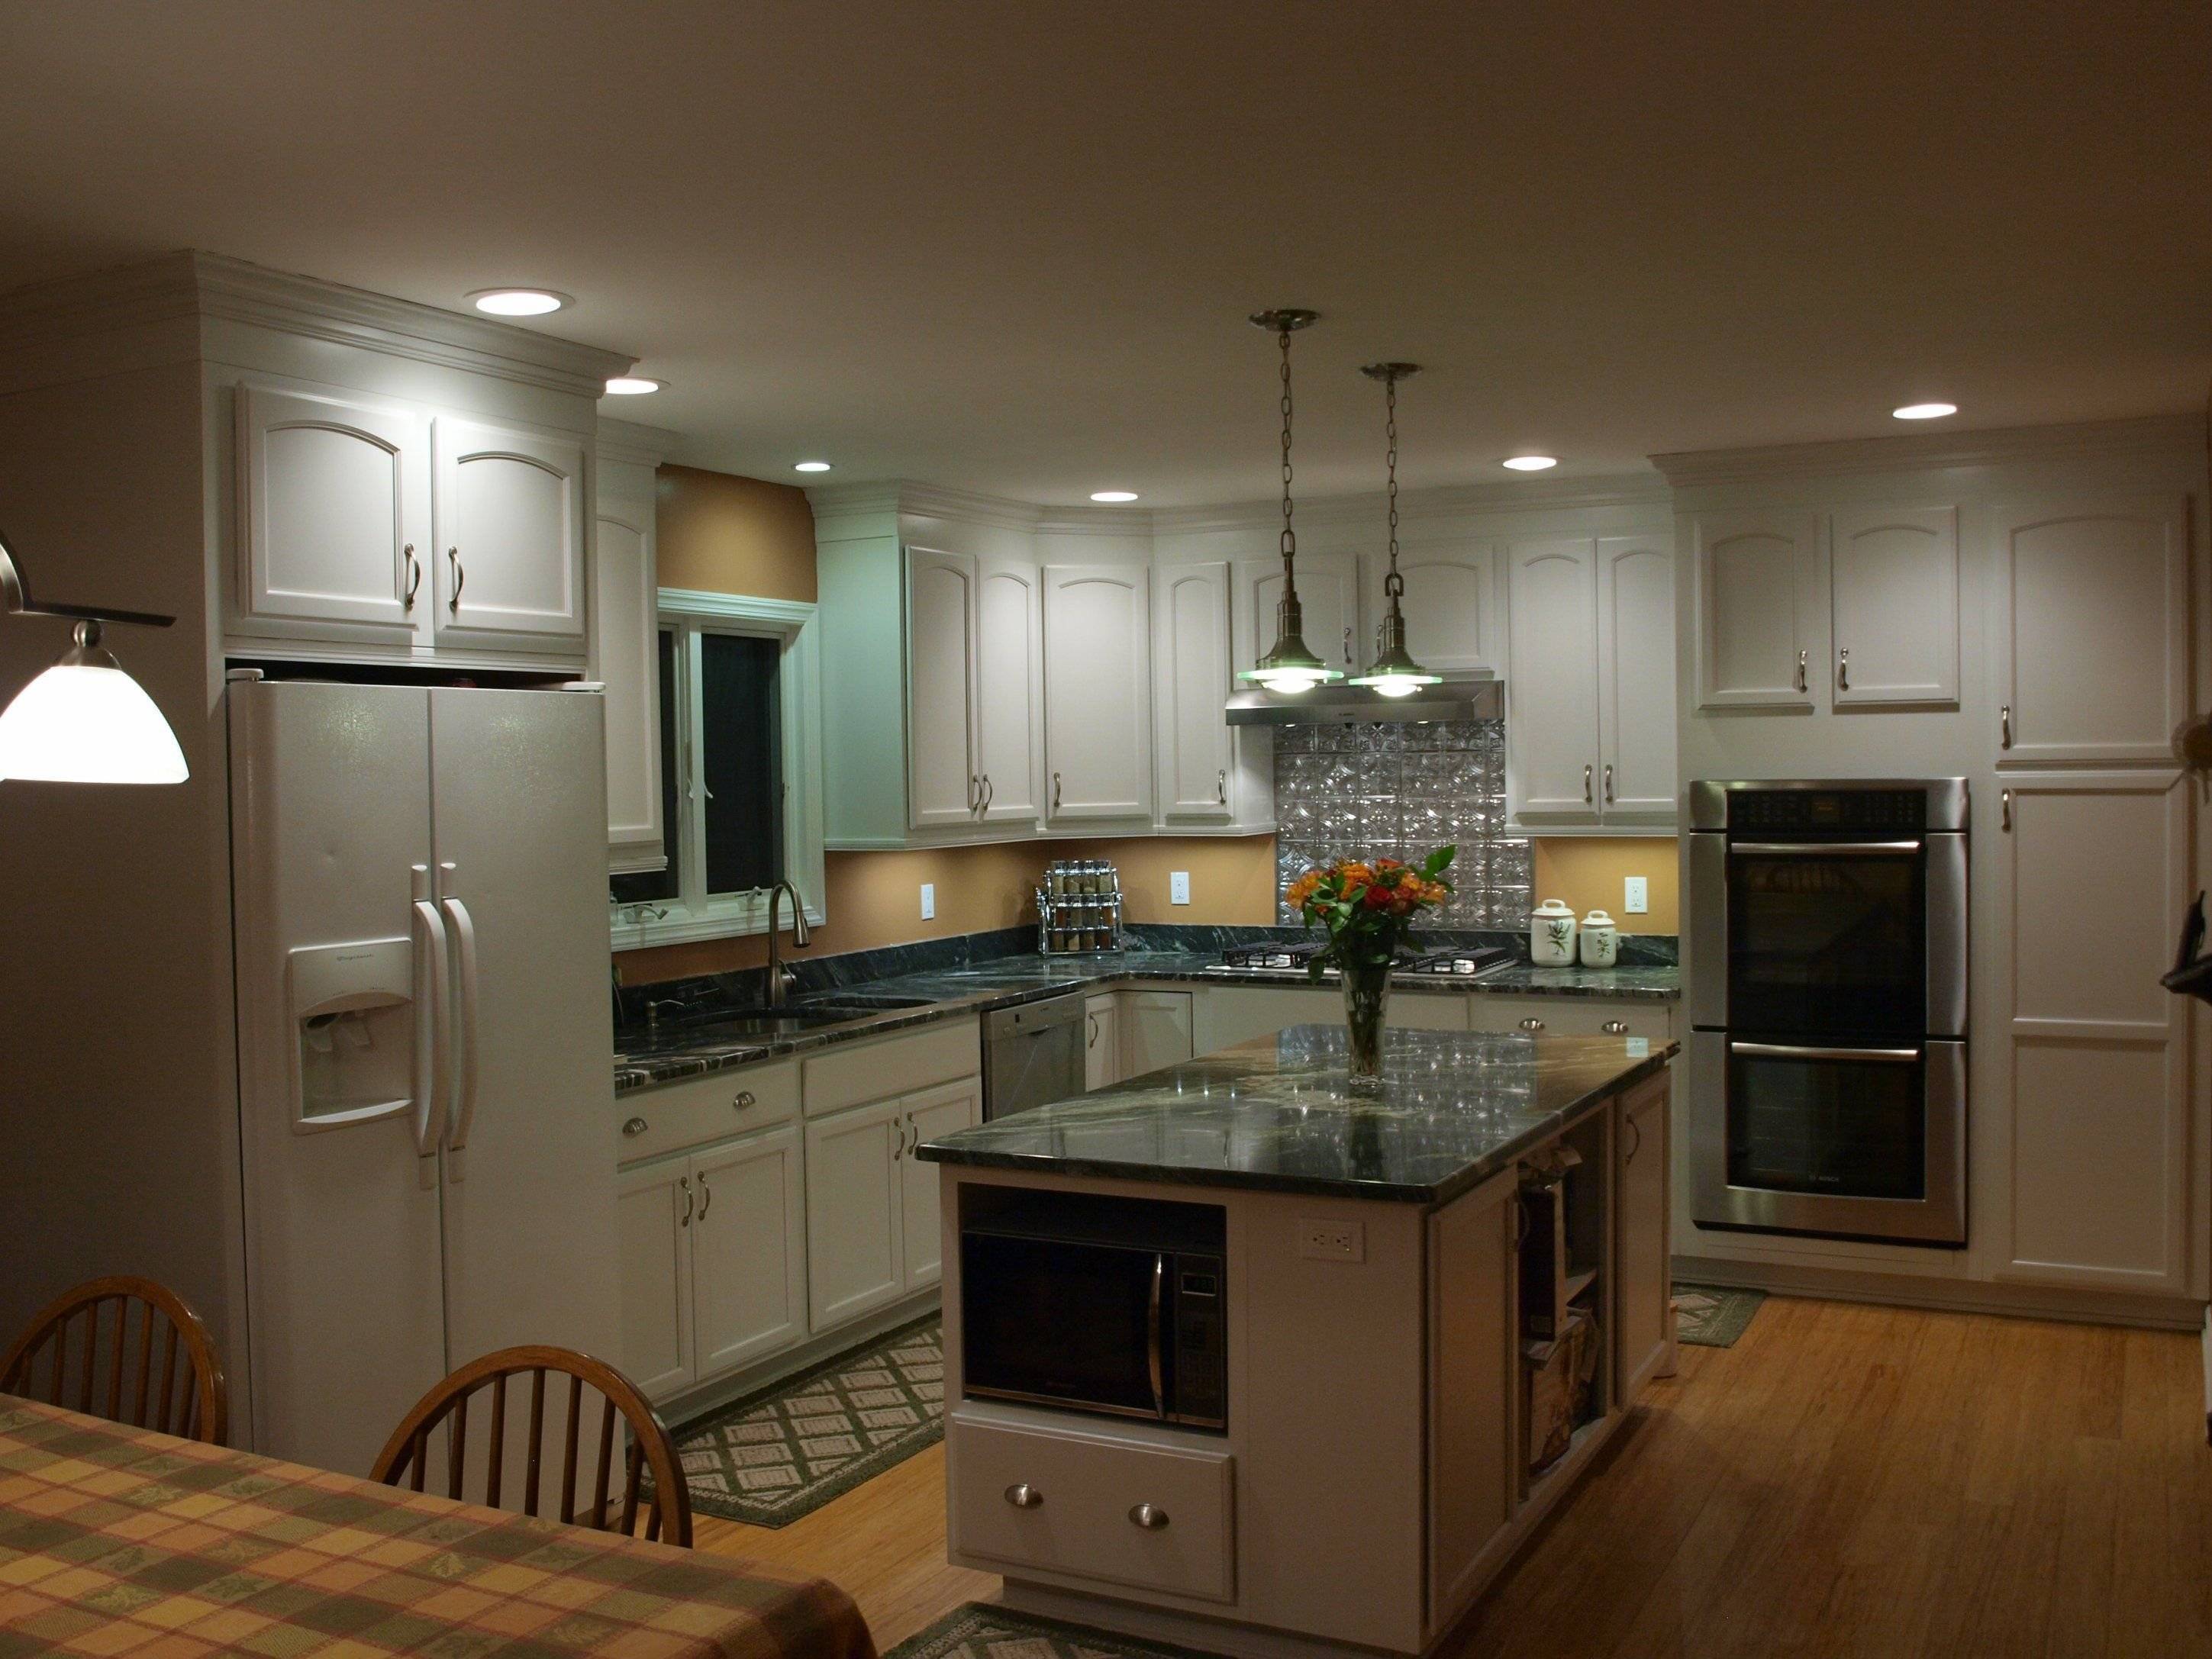 Освещение на кухне с натяжным потолком: расположение лампочек, какие лучше